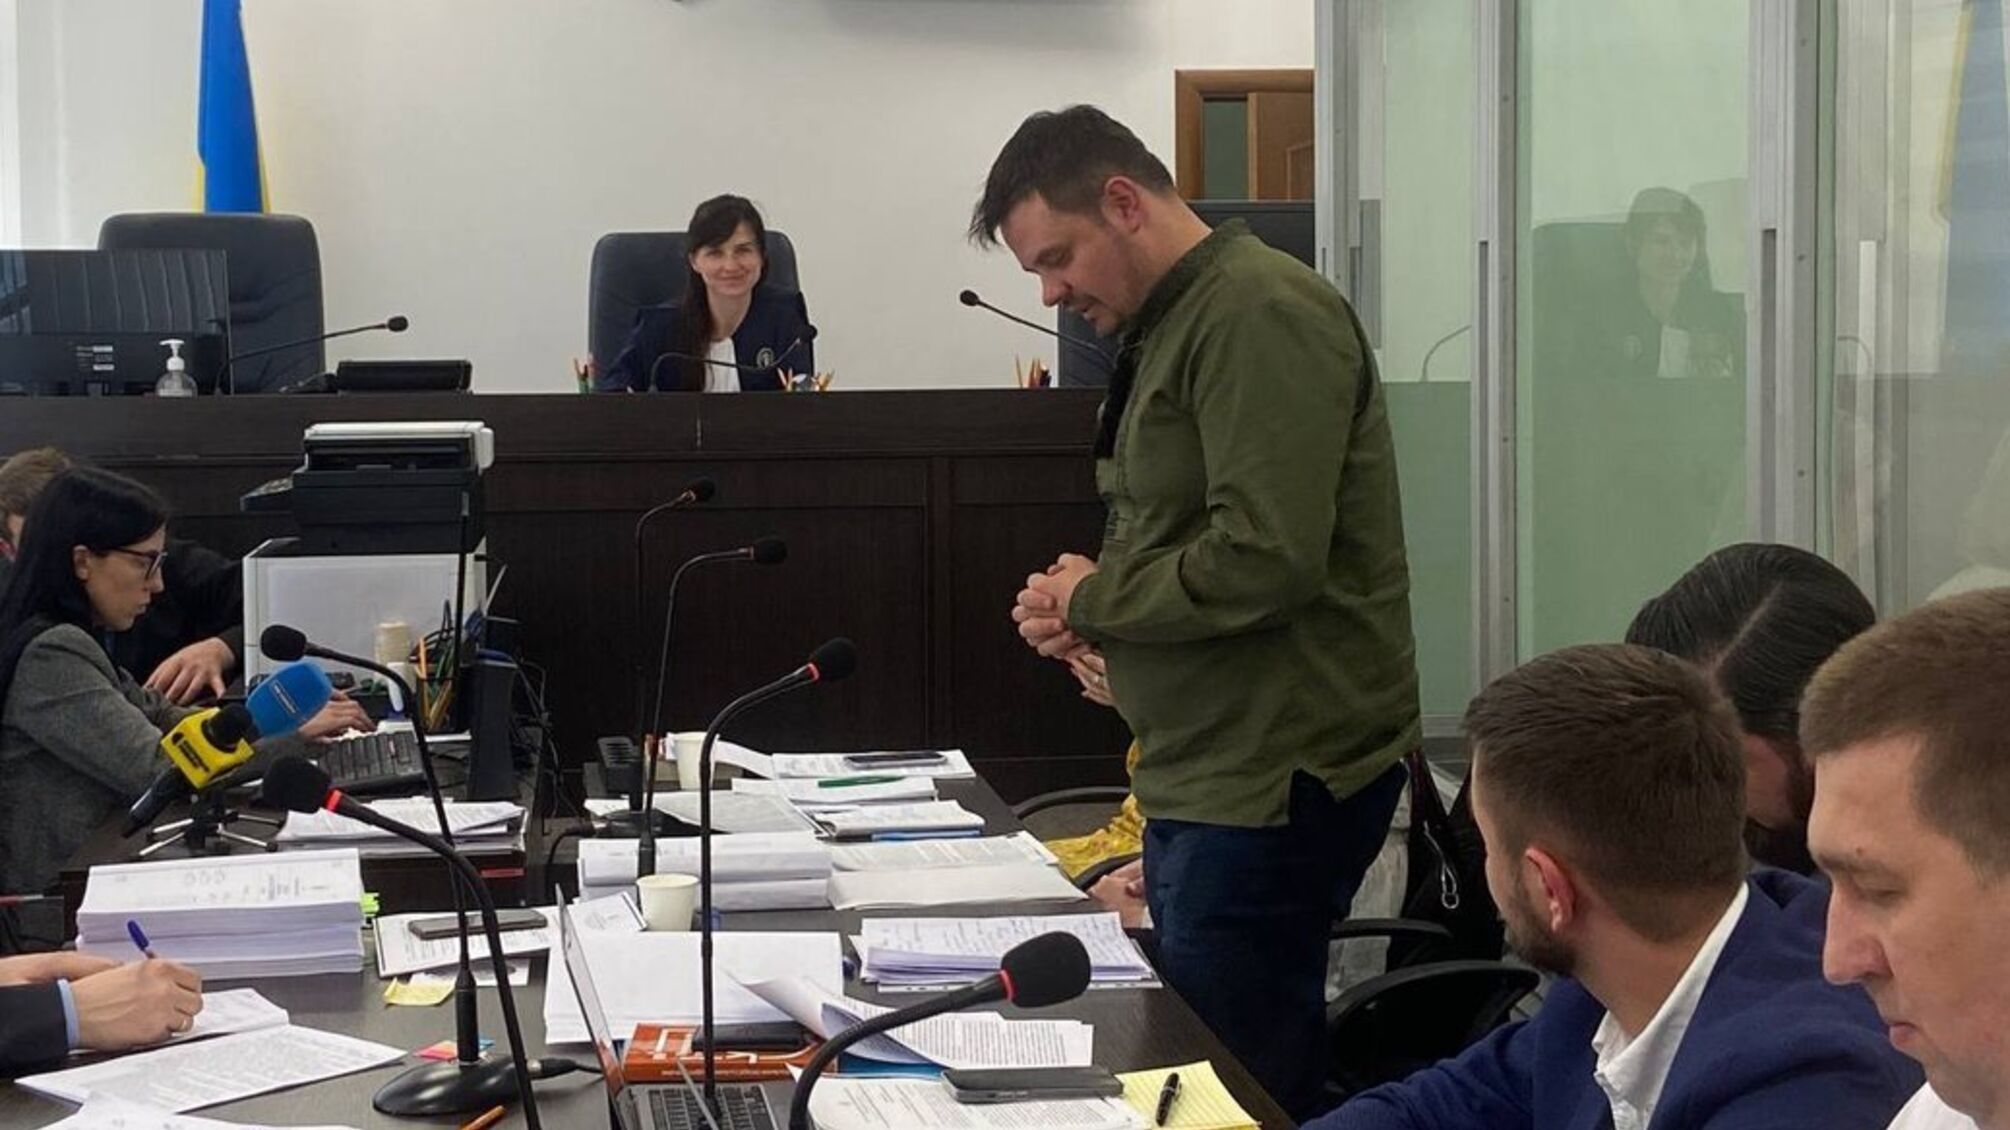 5 років умовно і 29 мільйонів на підтримку ЗСУ: спільнику судді Князєва адвокату Горецькому оголосили вирок